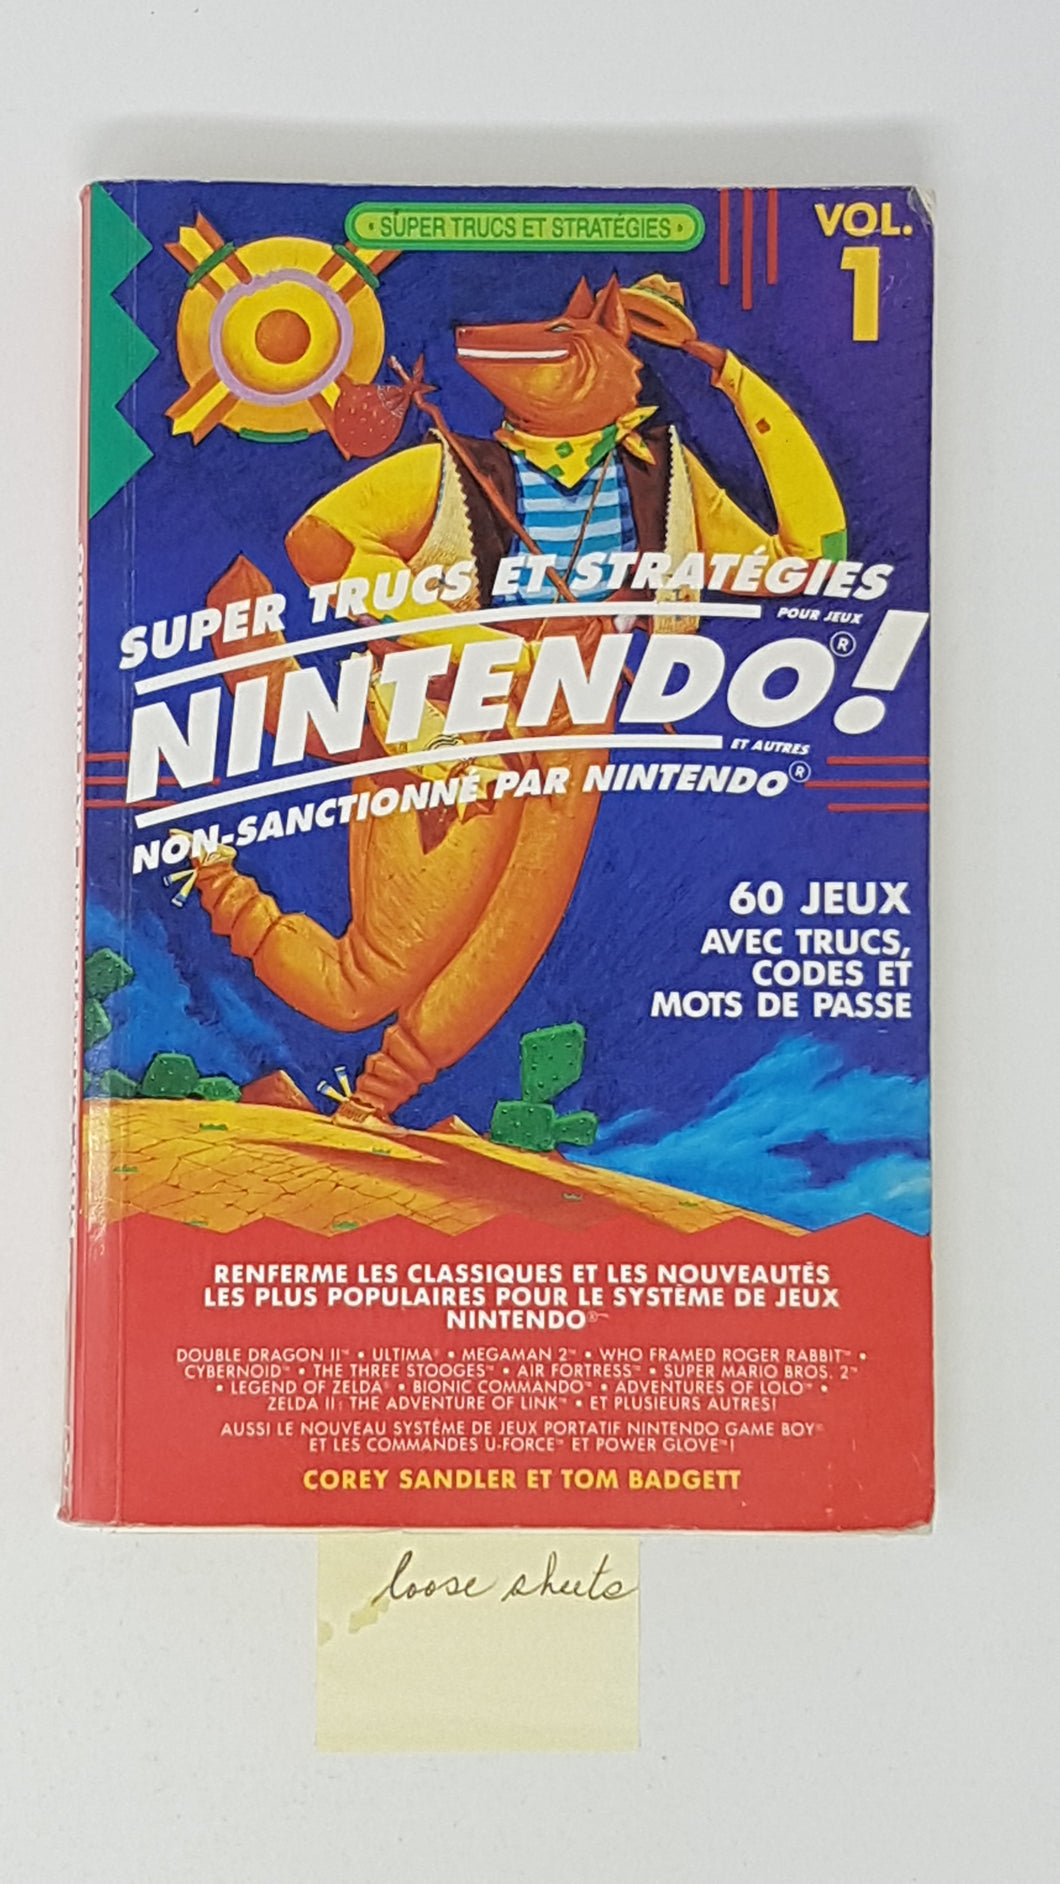 Super Trucs et Stratégies Nintendo Vol. 1 - Guide stratégique